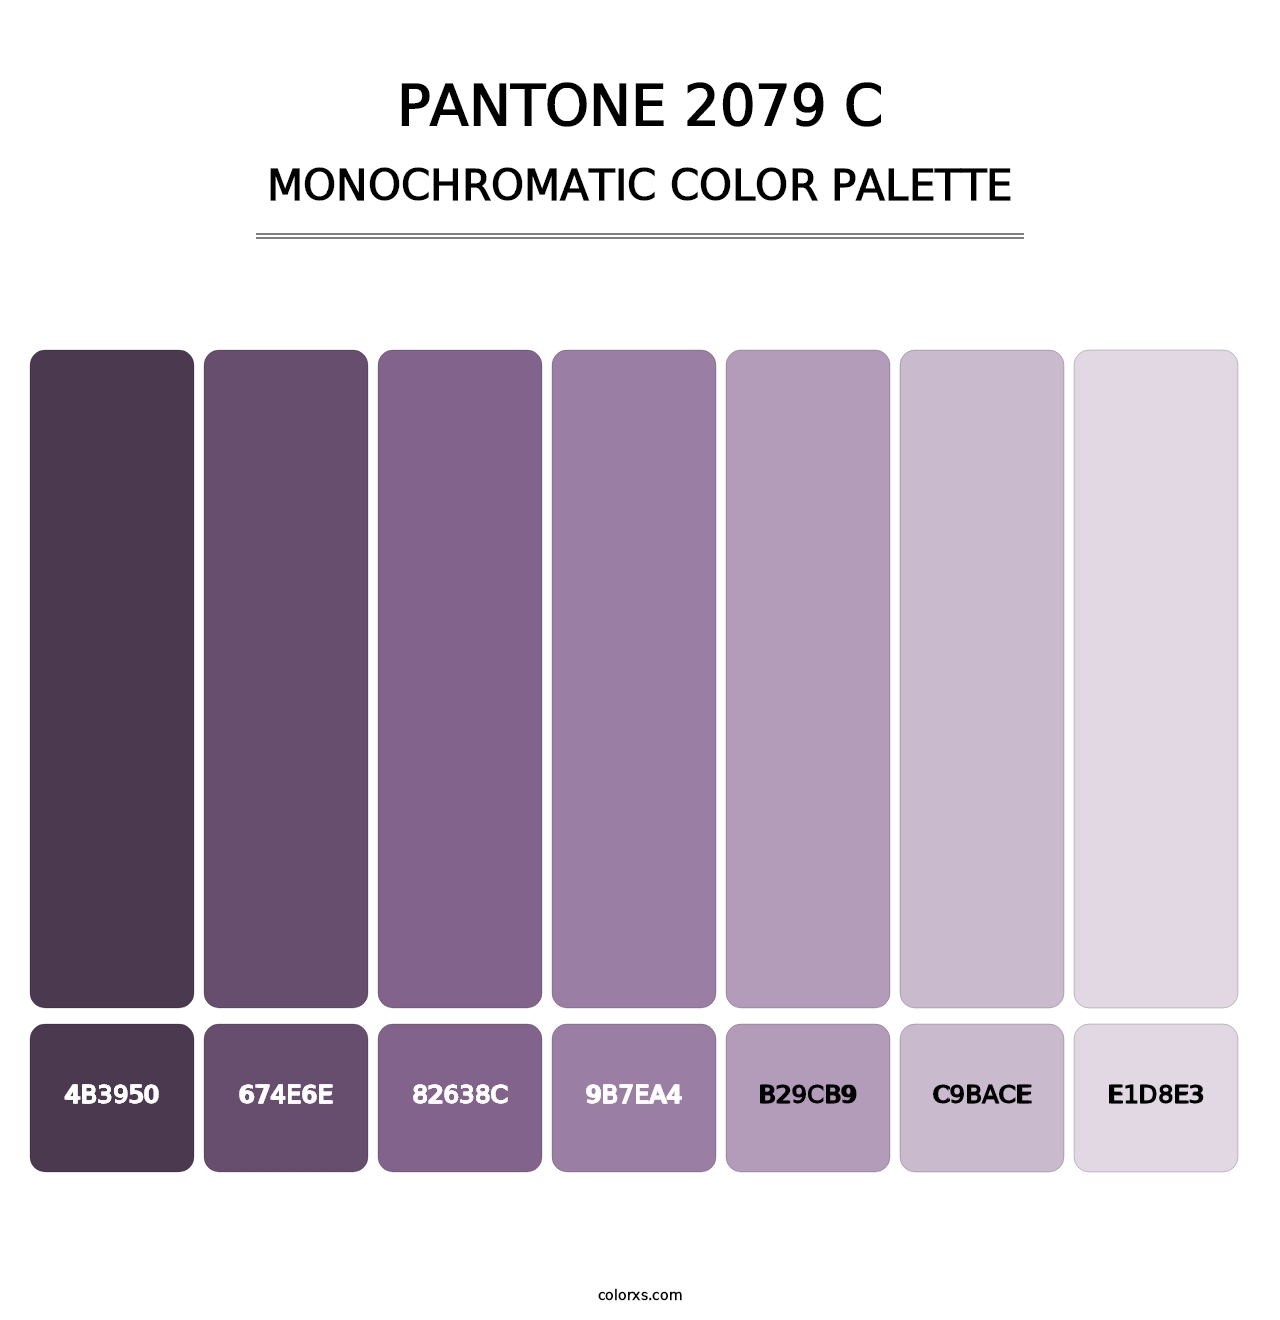 PANTONE 2079 C - Monochromatic Color Palette